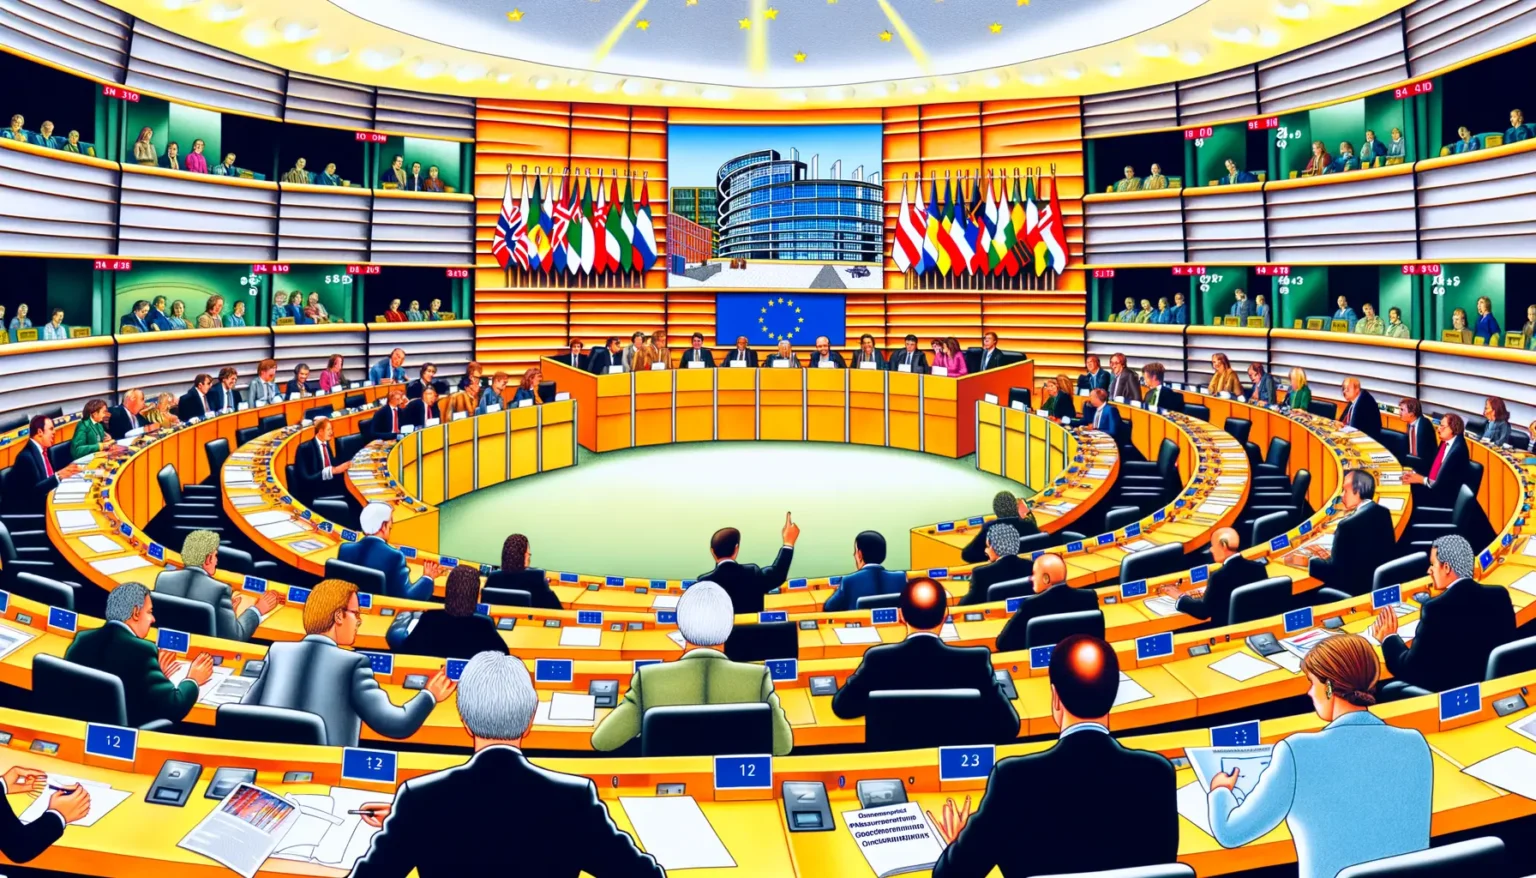 Illustration eines Parlamentssaals mit abgestuften Sitzreihen, in dem Delegierte in formeller Kleidung sitzen und diskutieren. In der Mitte befindet sich ein Halbkreis mit Mitgliedern, die ebenso formell gekleidet sind und auf eine EU-Flagge und nationale Flaggen vor einem Bild des Europäischen Parlaments blicken. Über dem Zentrum schweben stilisiert leuchtende Sterne an der Decke.